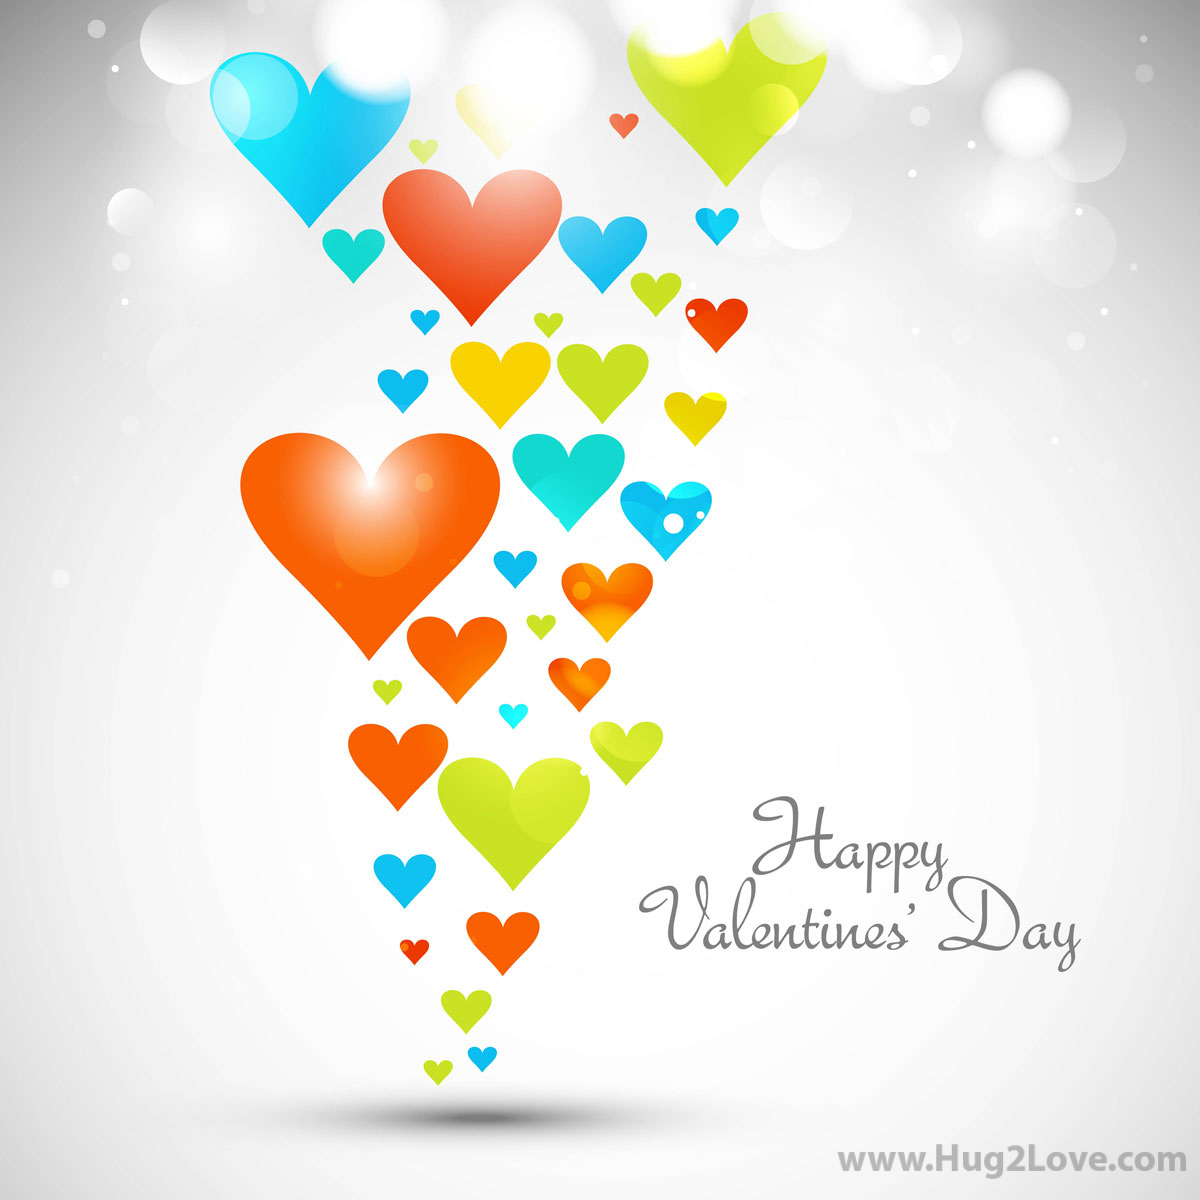 발렌타인 데이 벽지,심장,풍선,삽화,그래픽 디자인,사랑